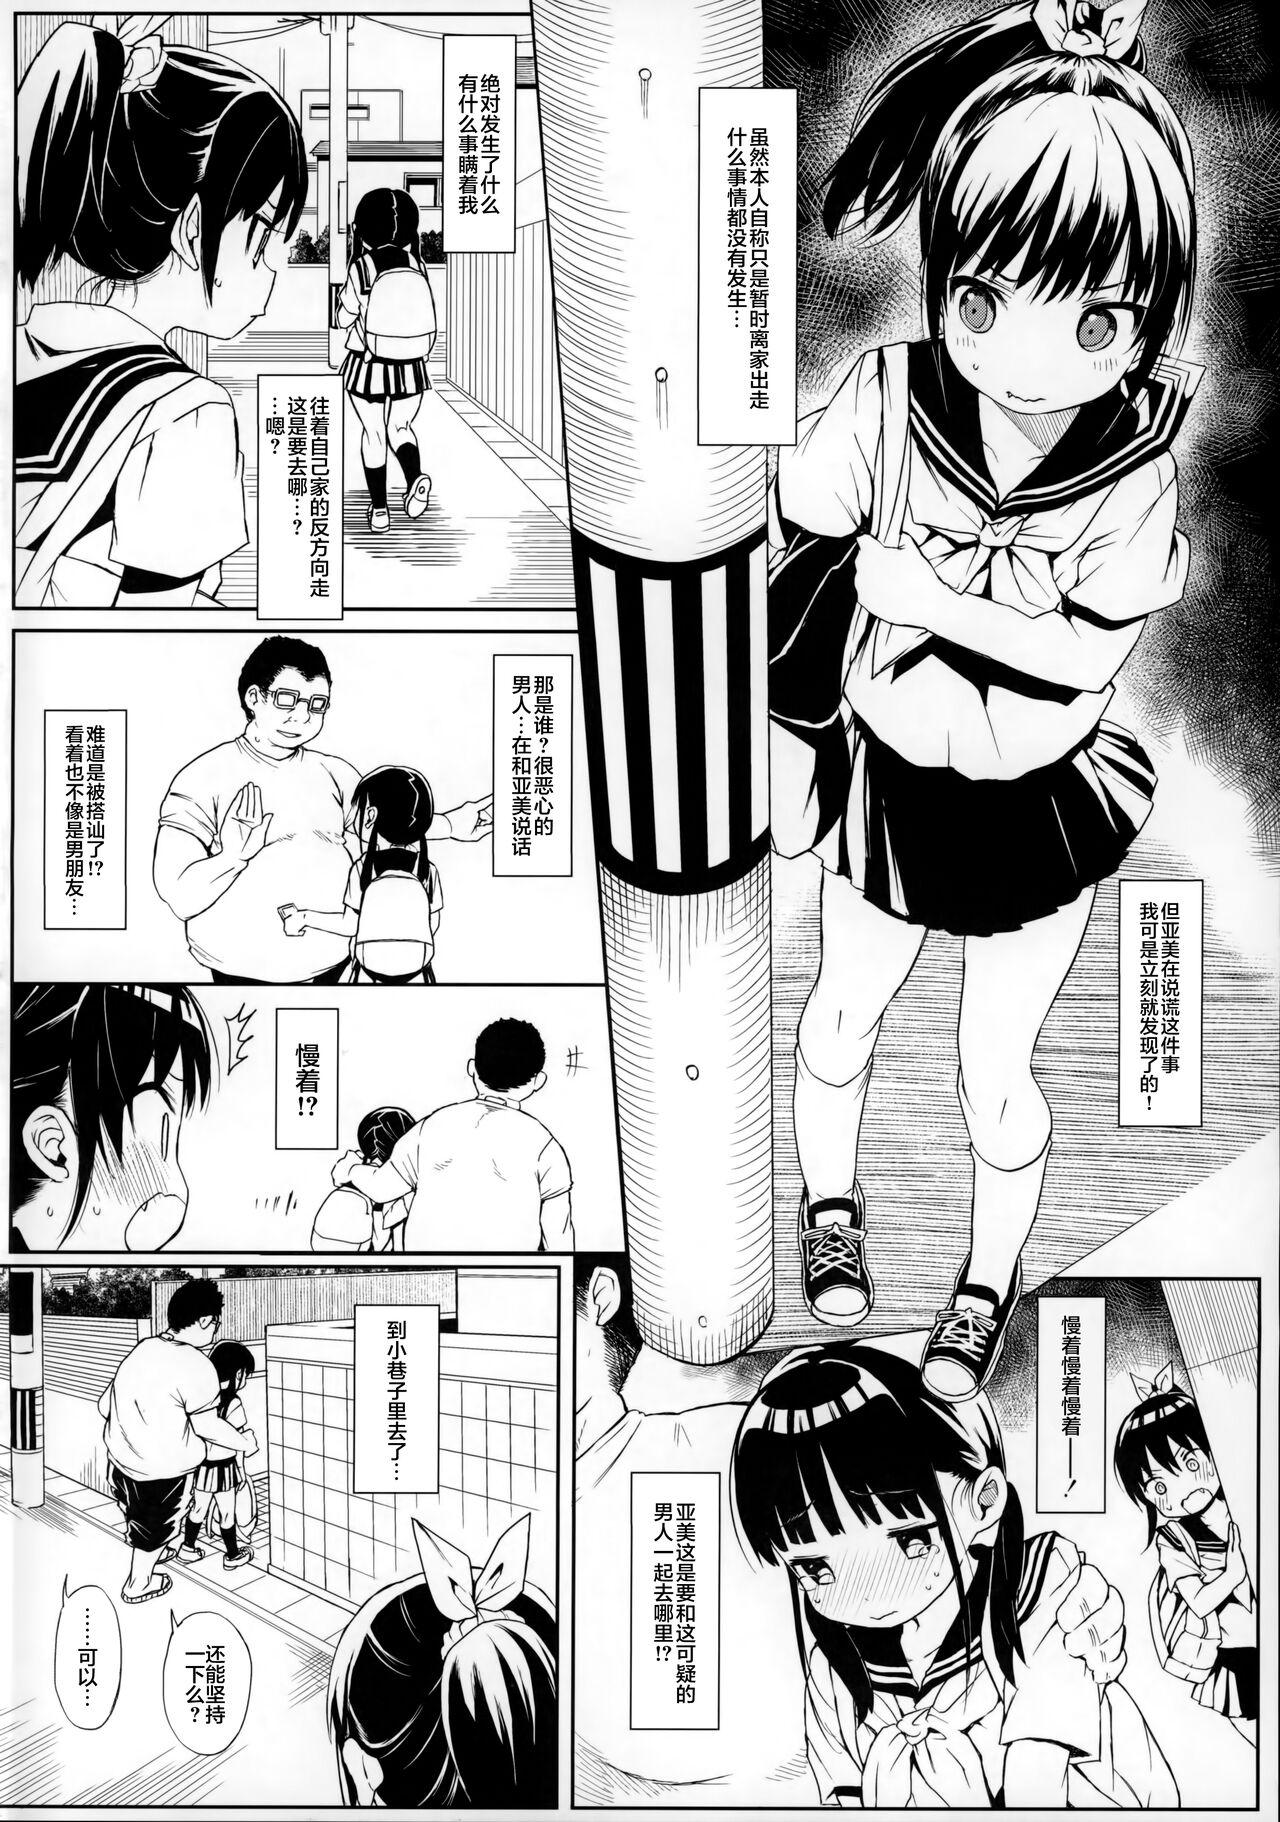 Little コミケのおまけまとめ part1 - Eromanga sensei Bigbooty - Page 5